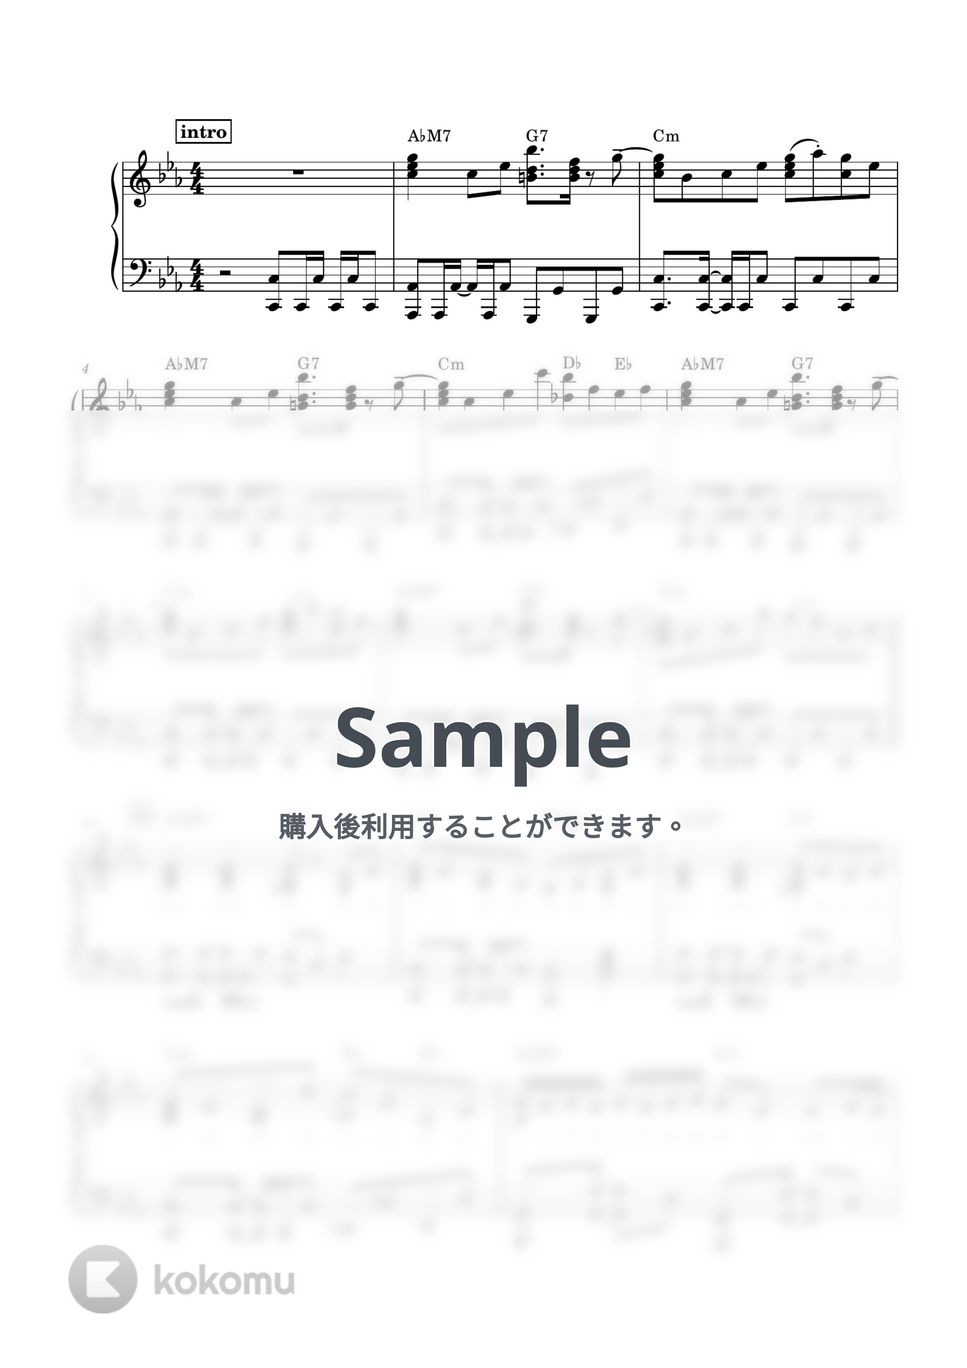 Ayase - 幽霊東京 (ピアノソロ / 上級 /  歌詞・コードあり / 初音ミク) by ena